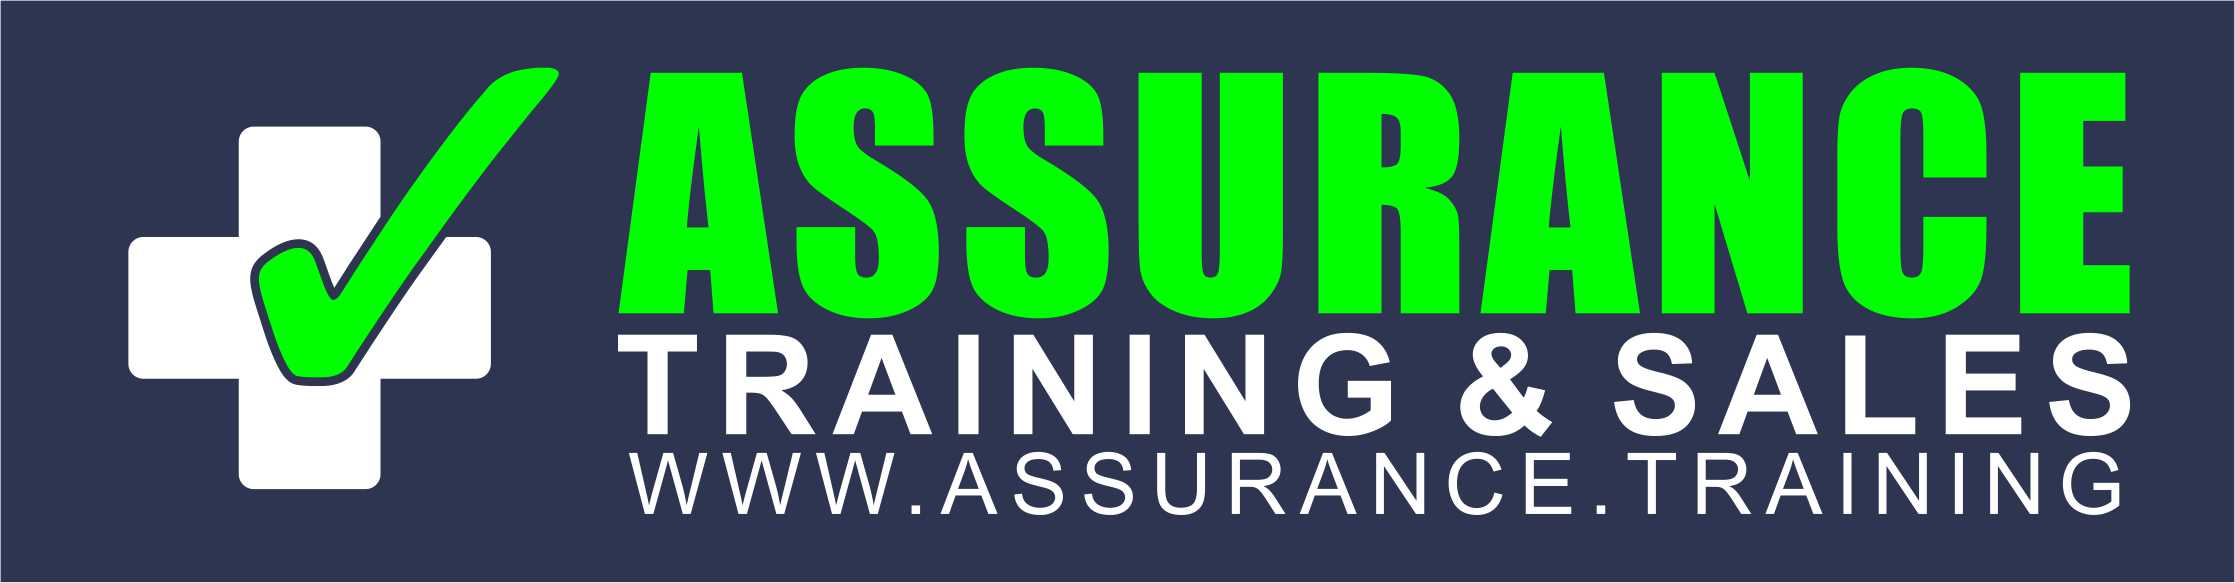 SEK Regional LTD PTY T/A Assurance Training & Sales